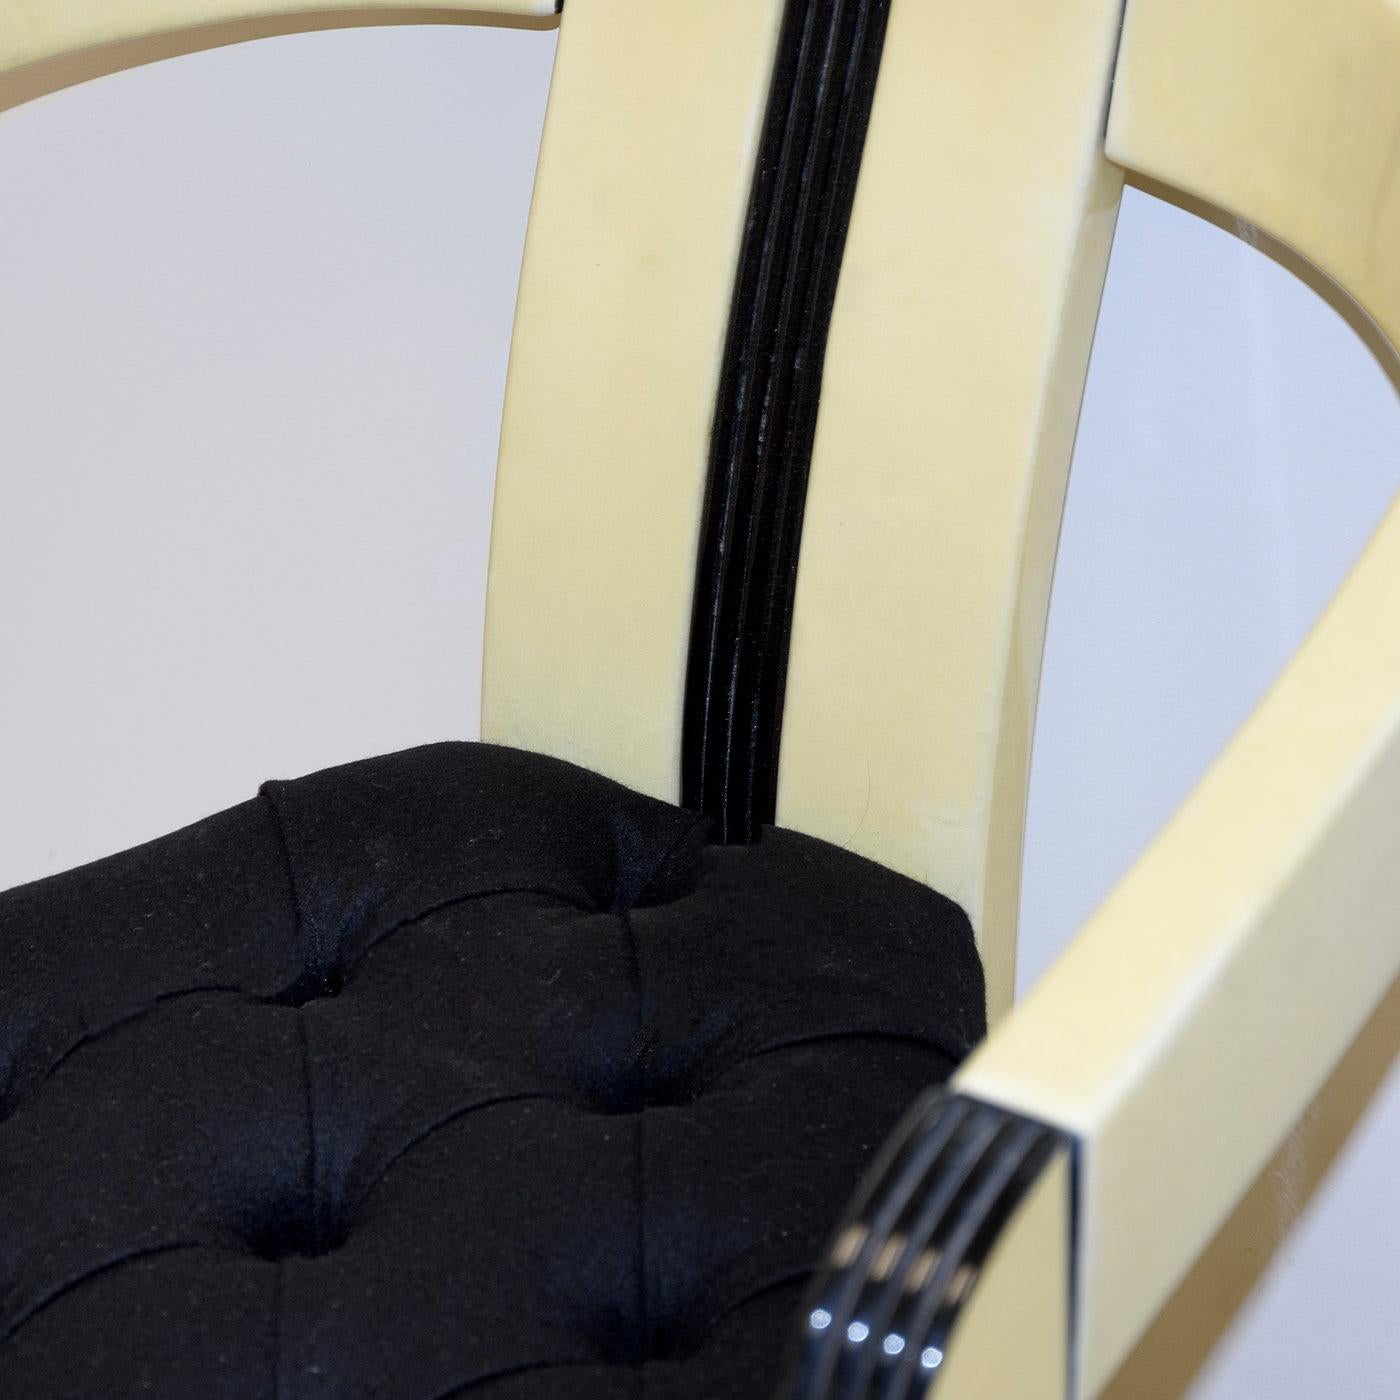 Mit seiner unkonventionellen dreieckigen Form und seinem Mid-Century-Look ist der Tria-Sessel ein auffälliges Statement in einem modernen Zuhause oder Büro. Das Gestell aus Massivholz kombiniert ein minimalistisches, stromlinienförmiges Design mit